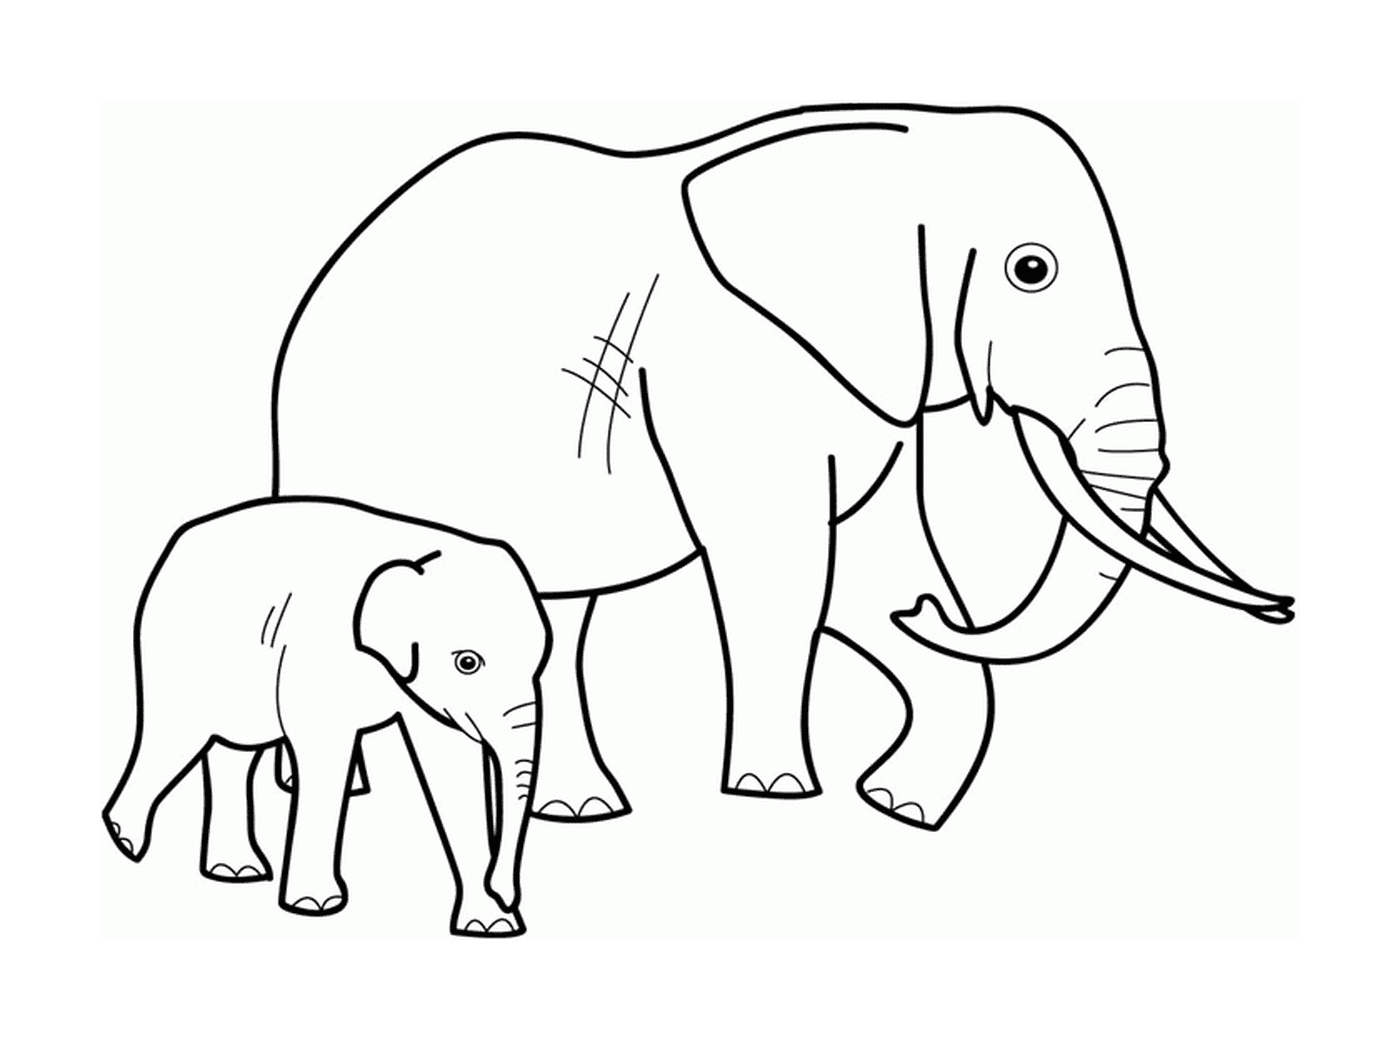  Взрослый слон и слон рядом друг с другом 